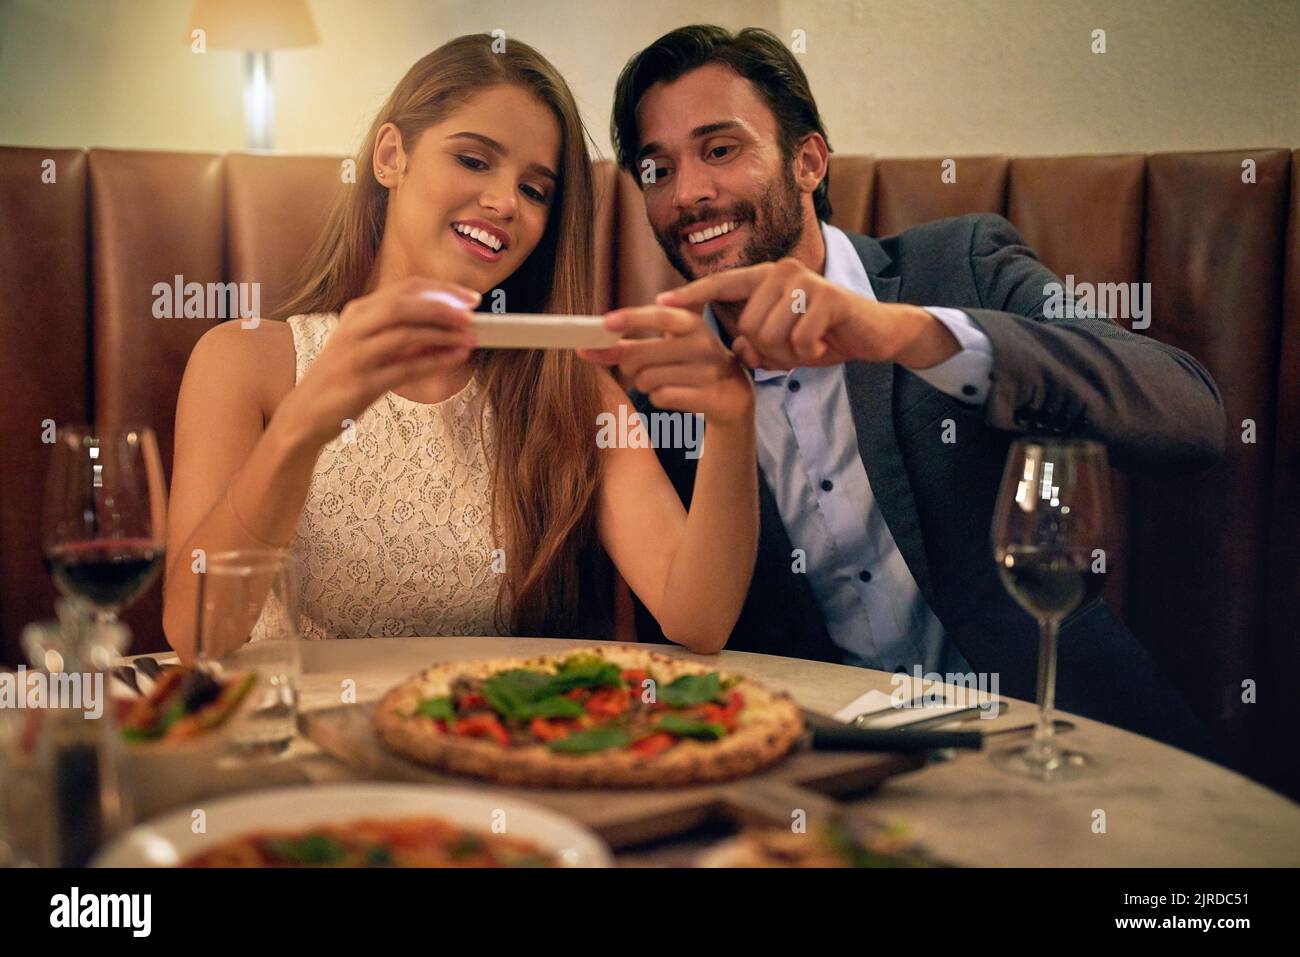 Ein glückliches junges Paar, das während eines romantischen Abendessens in einem Restaurant ein Foto von seinem Essen auf einem Handy macht. Stockfoto